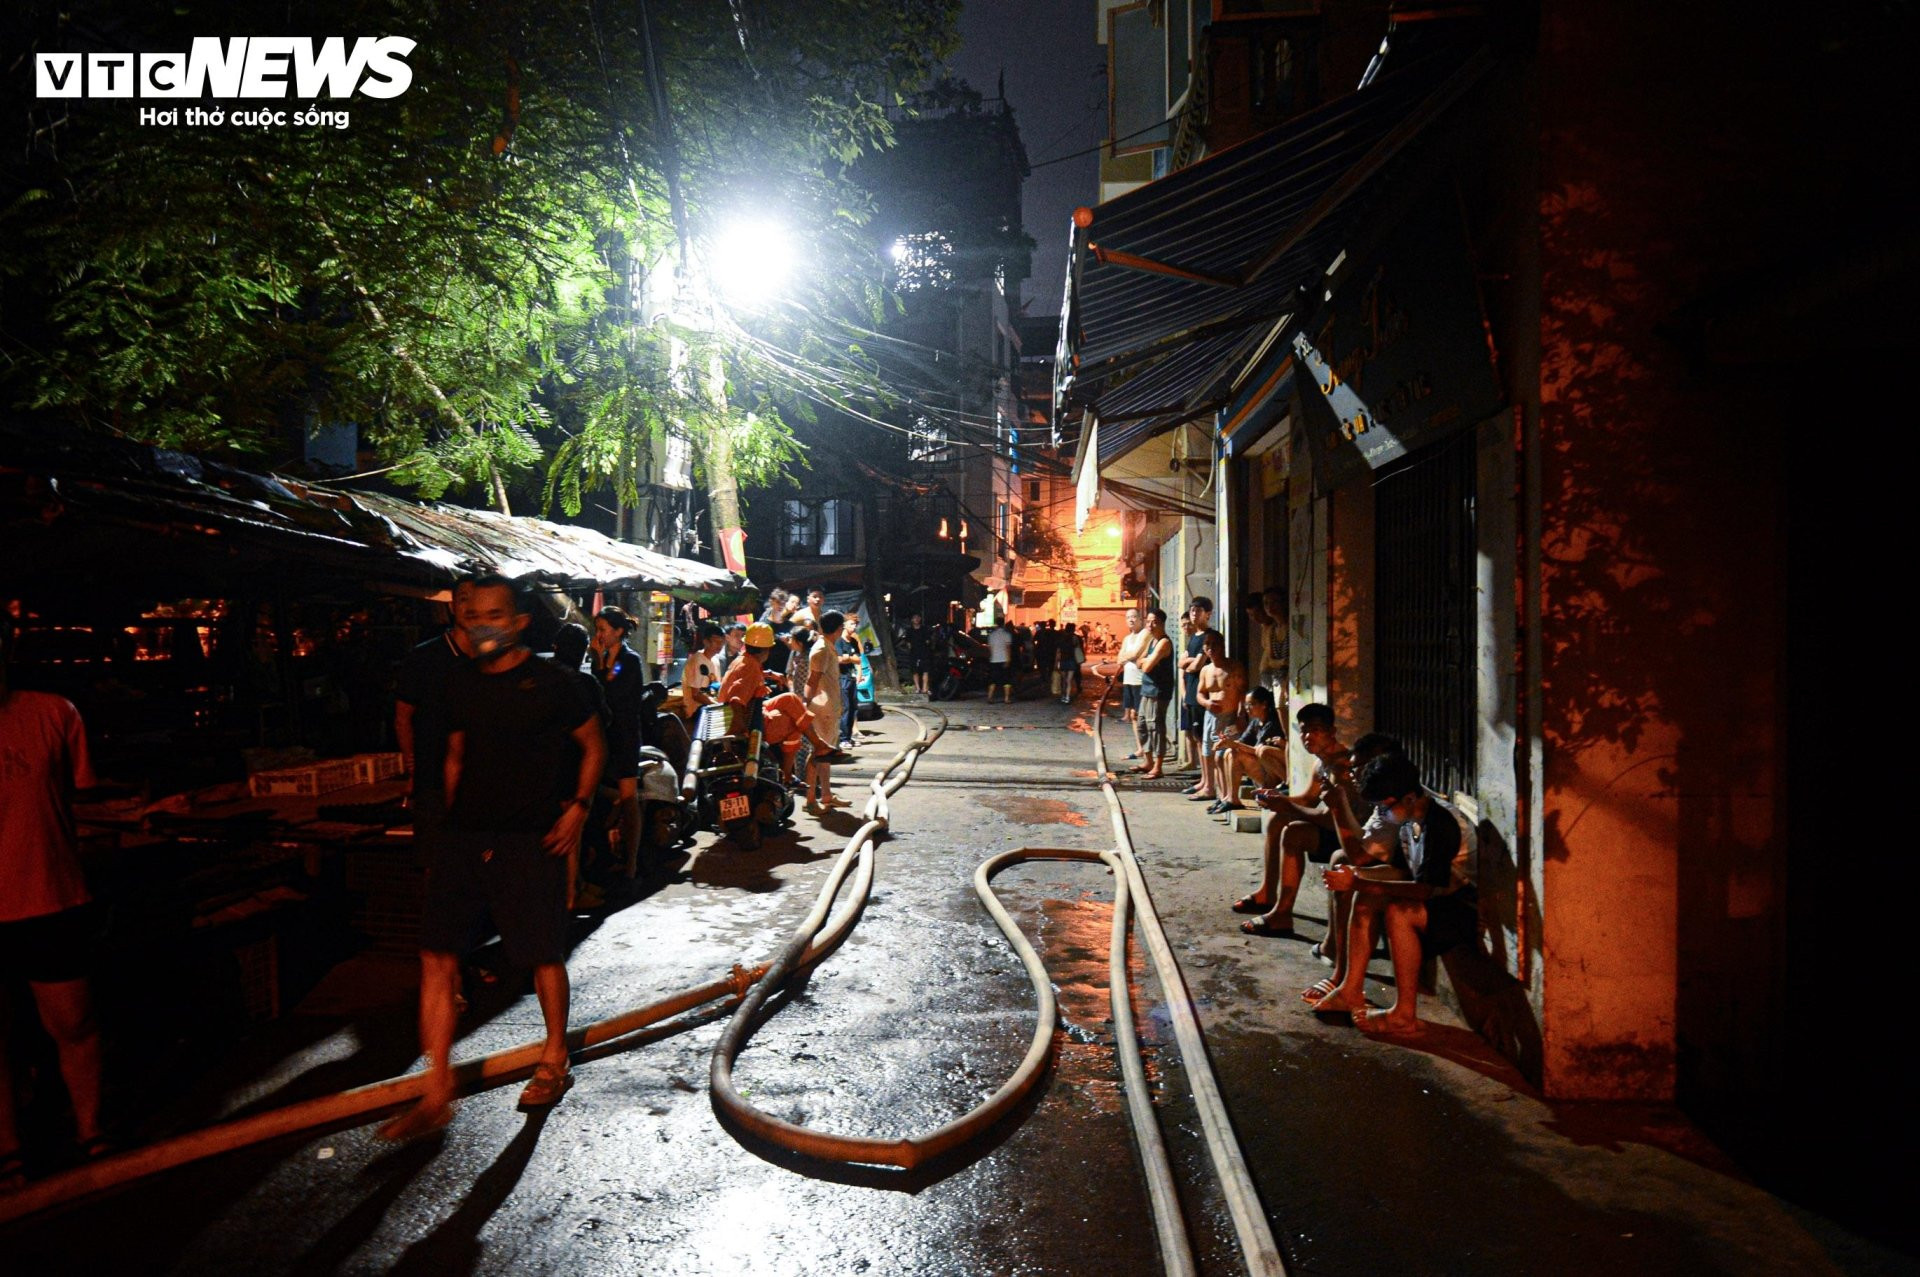 Hiện trường vụ cháy chung cư mini ở Hà Nội trong đêm, nhiều người ngất xỉu - 3